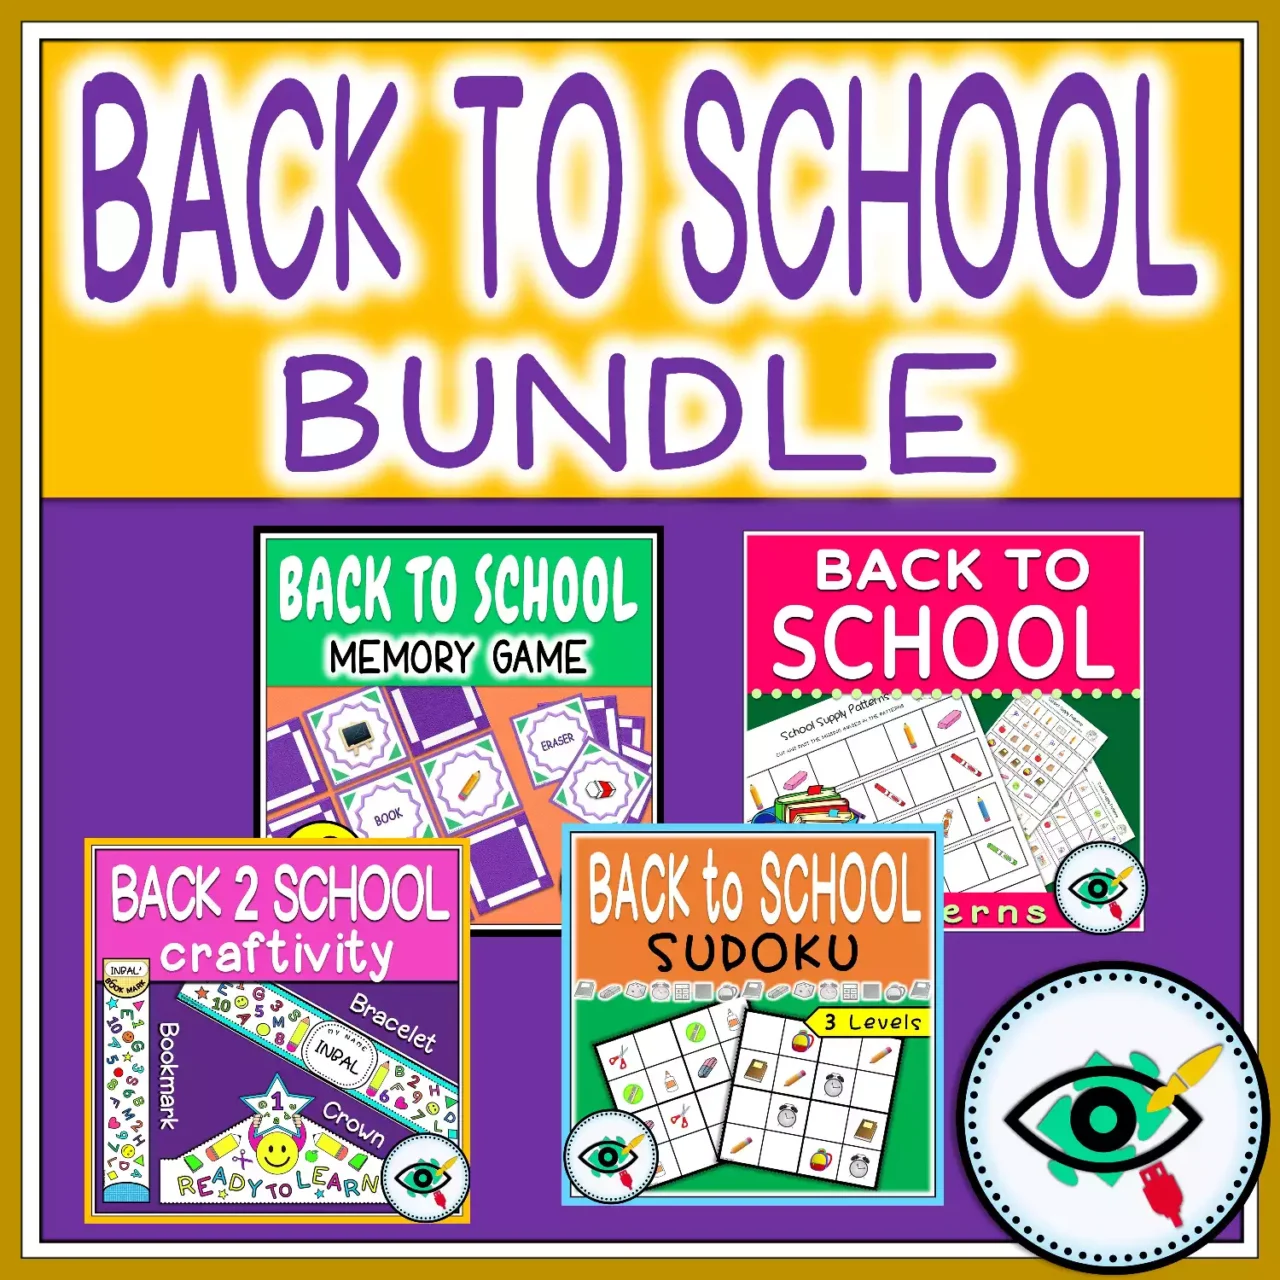 Back to School Activities Bundle - Featured